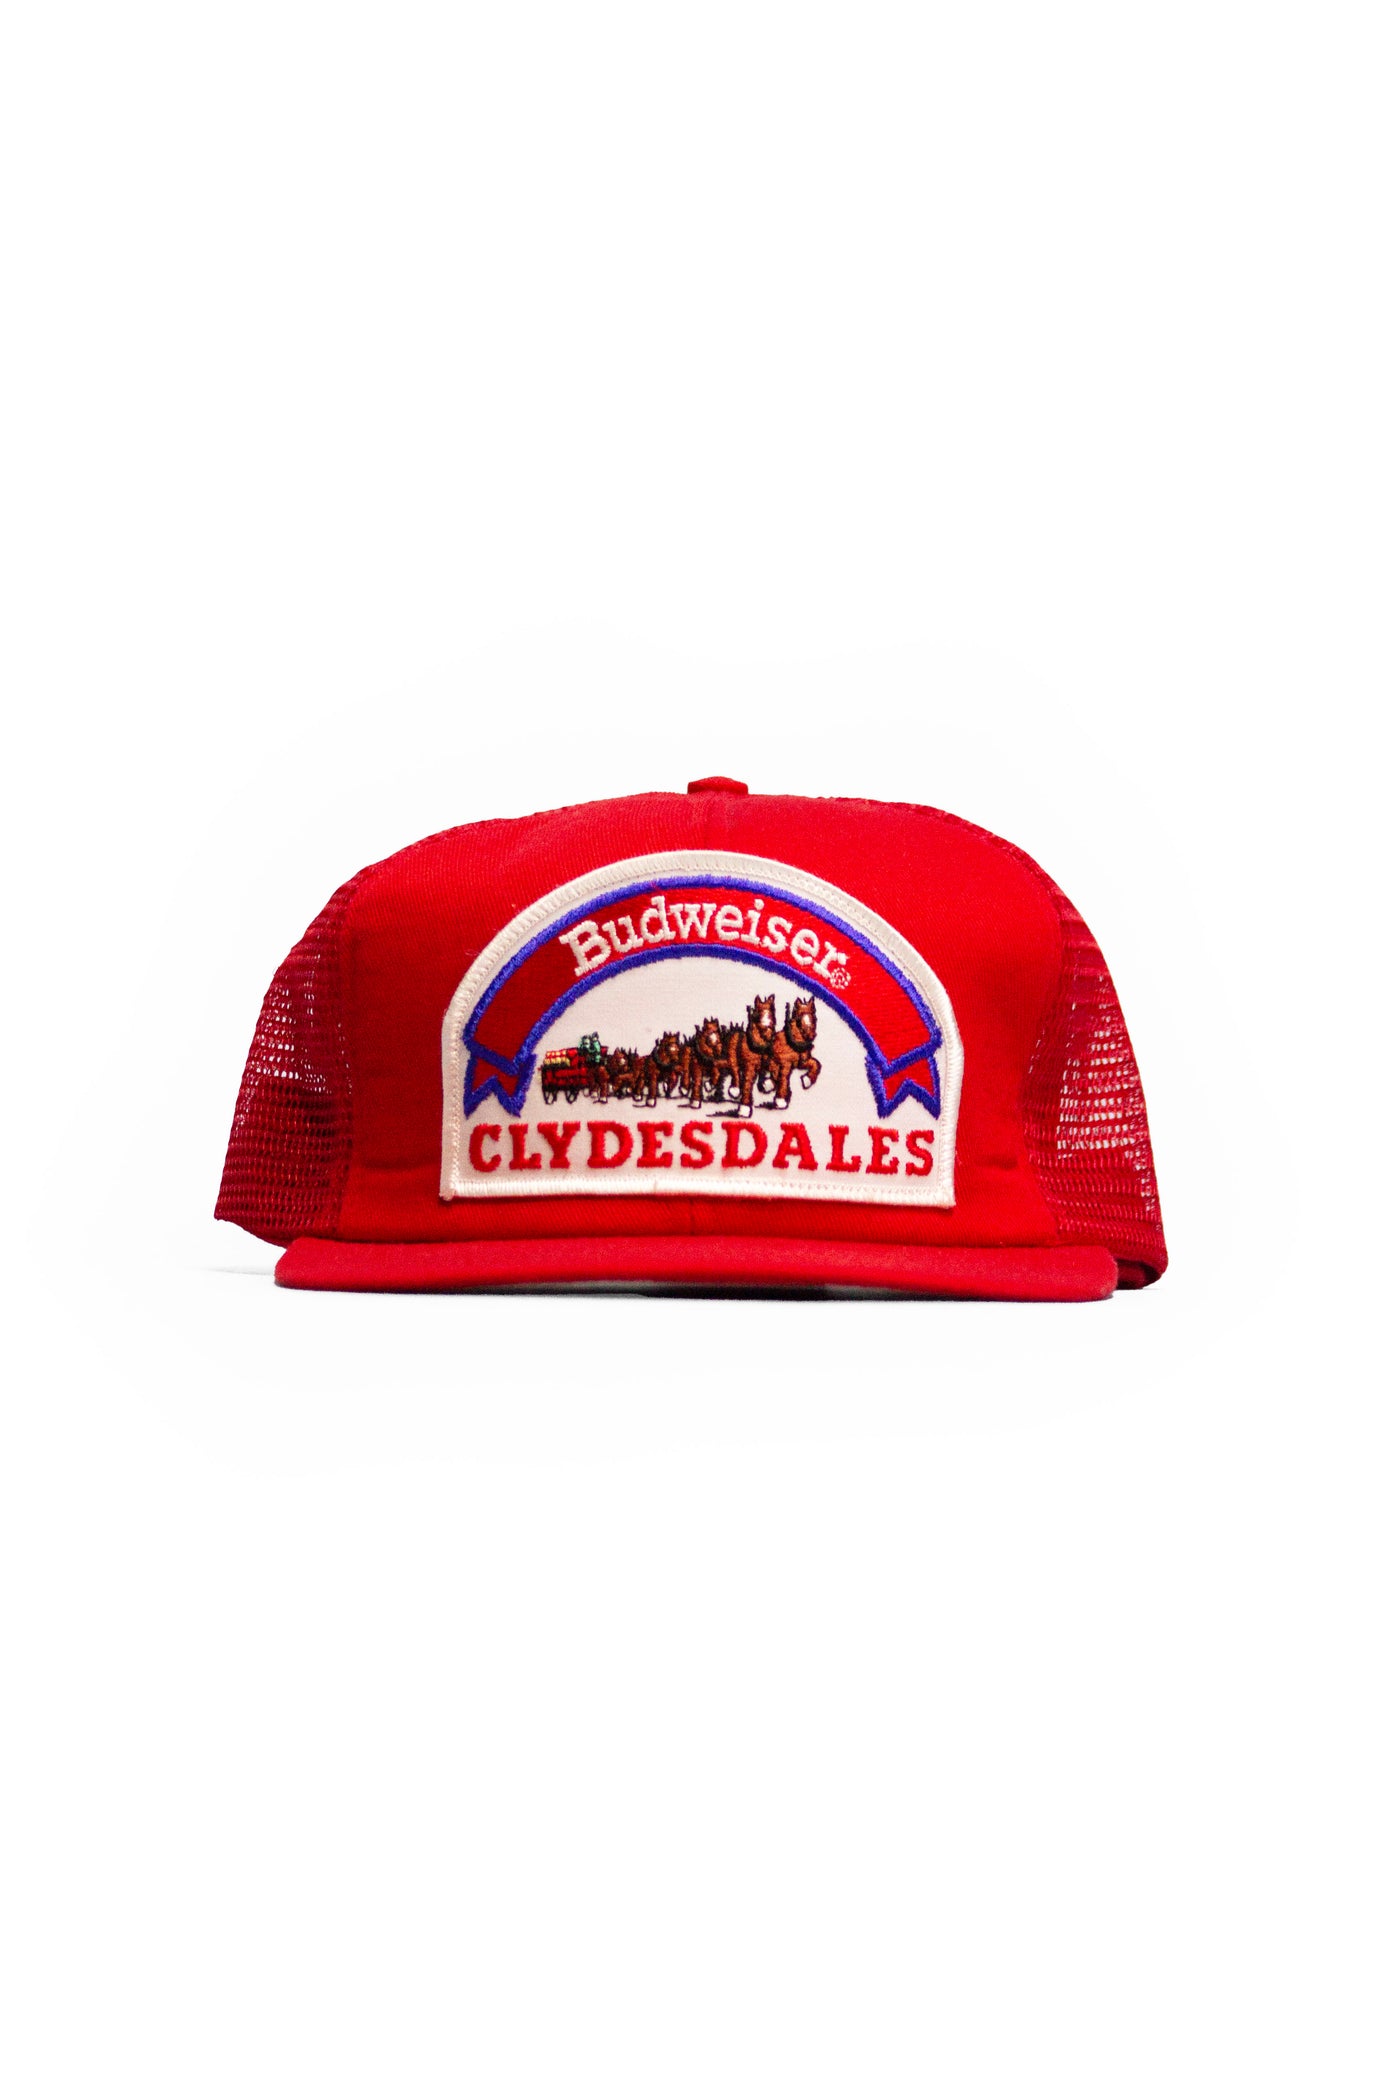 Vintage Budweiser Clydesdales Trucker Hat